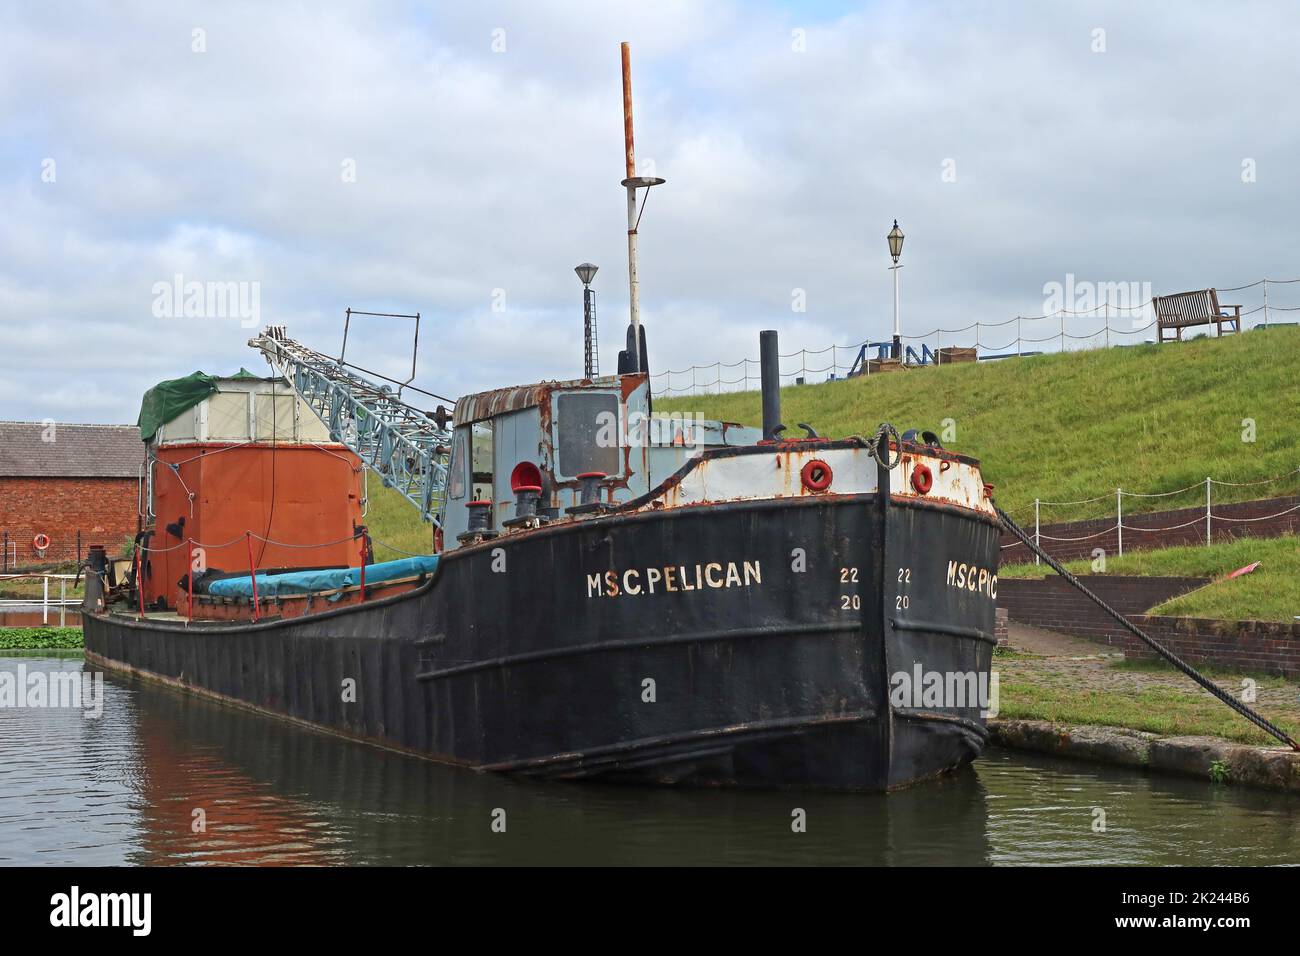 MSC Pelican (barge de grue préservée), bassin du canal du port d'Ellesmere, Cheshire, Angleterre, Royaume-Uni Banque D'Images